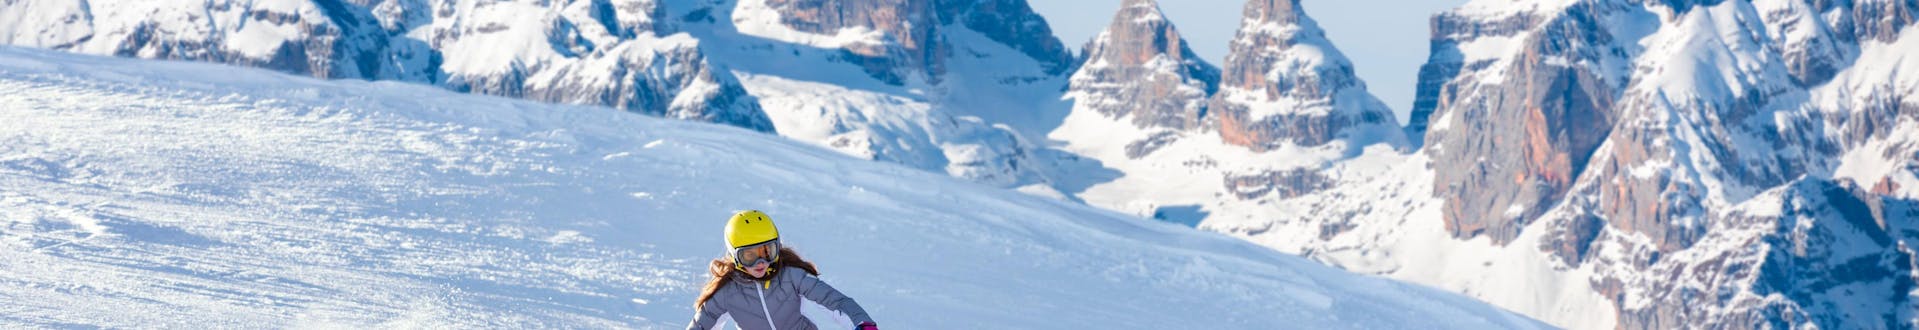 Una ragazza sta sciando nella splendida stazione sciistica del Monte Bondone, dove le scuole di sci locali offrono le loro lezioni di sci.